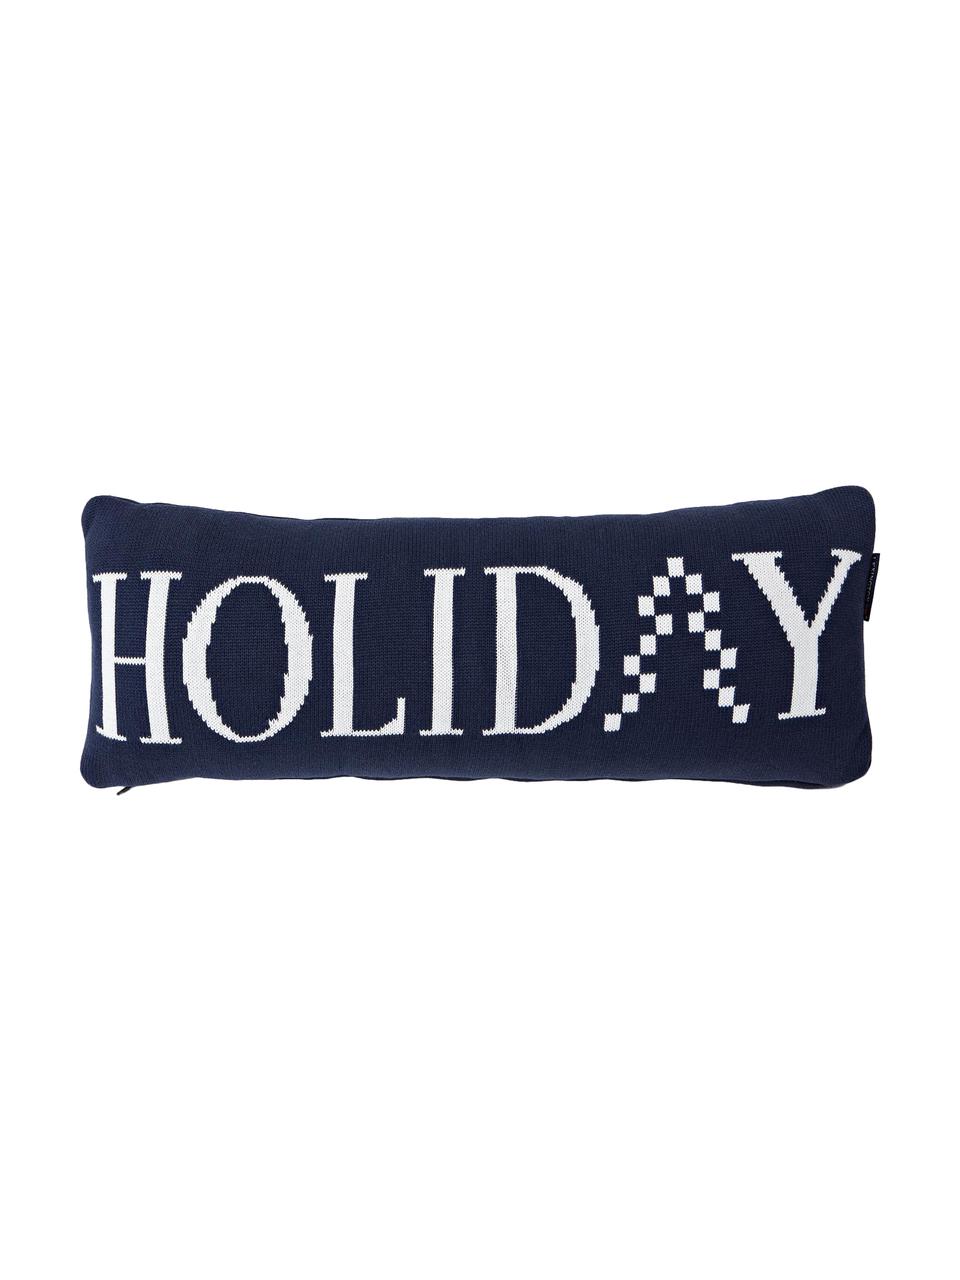 Langes Strick-Kissen Knitted Holiday mit Schriftzug, mit Inlett, Hülle: Baumwolle, Dunkelblau, Weiss, 25 x 70 cm